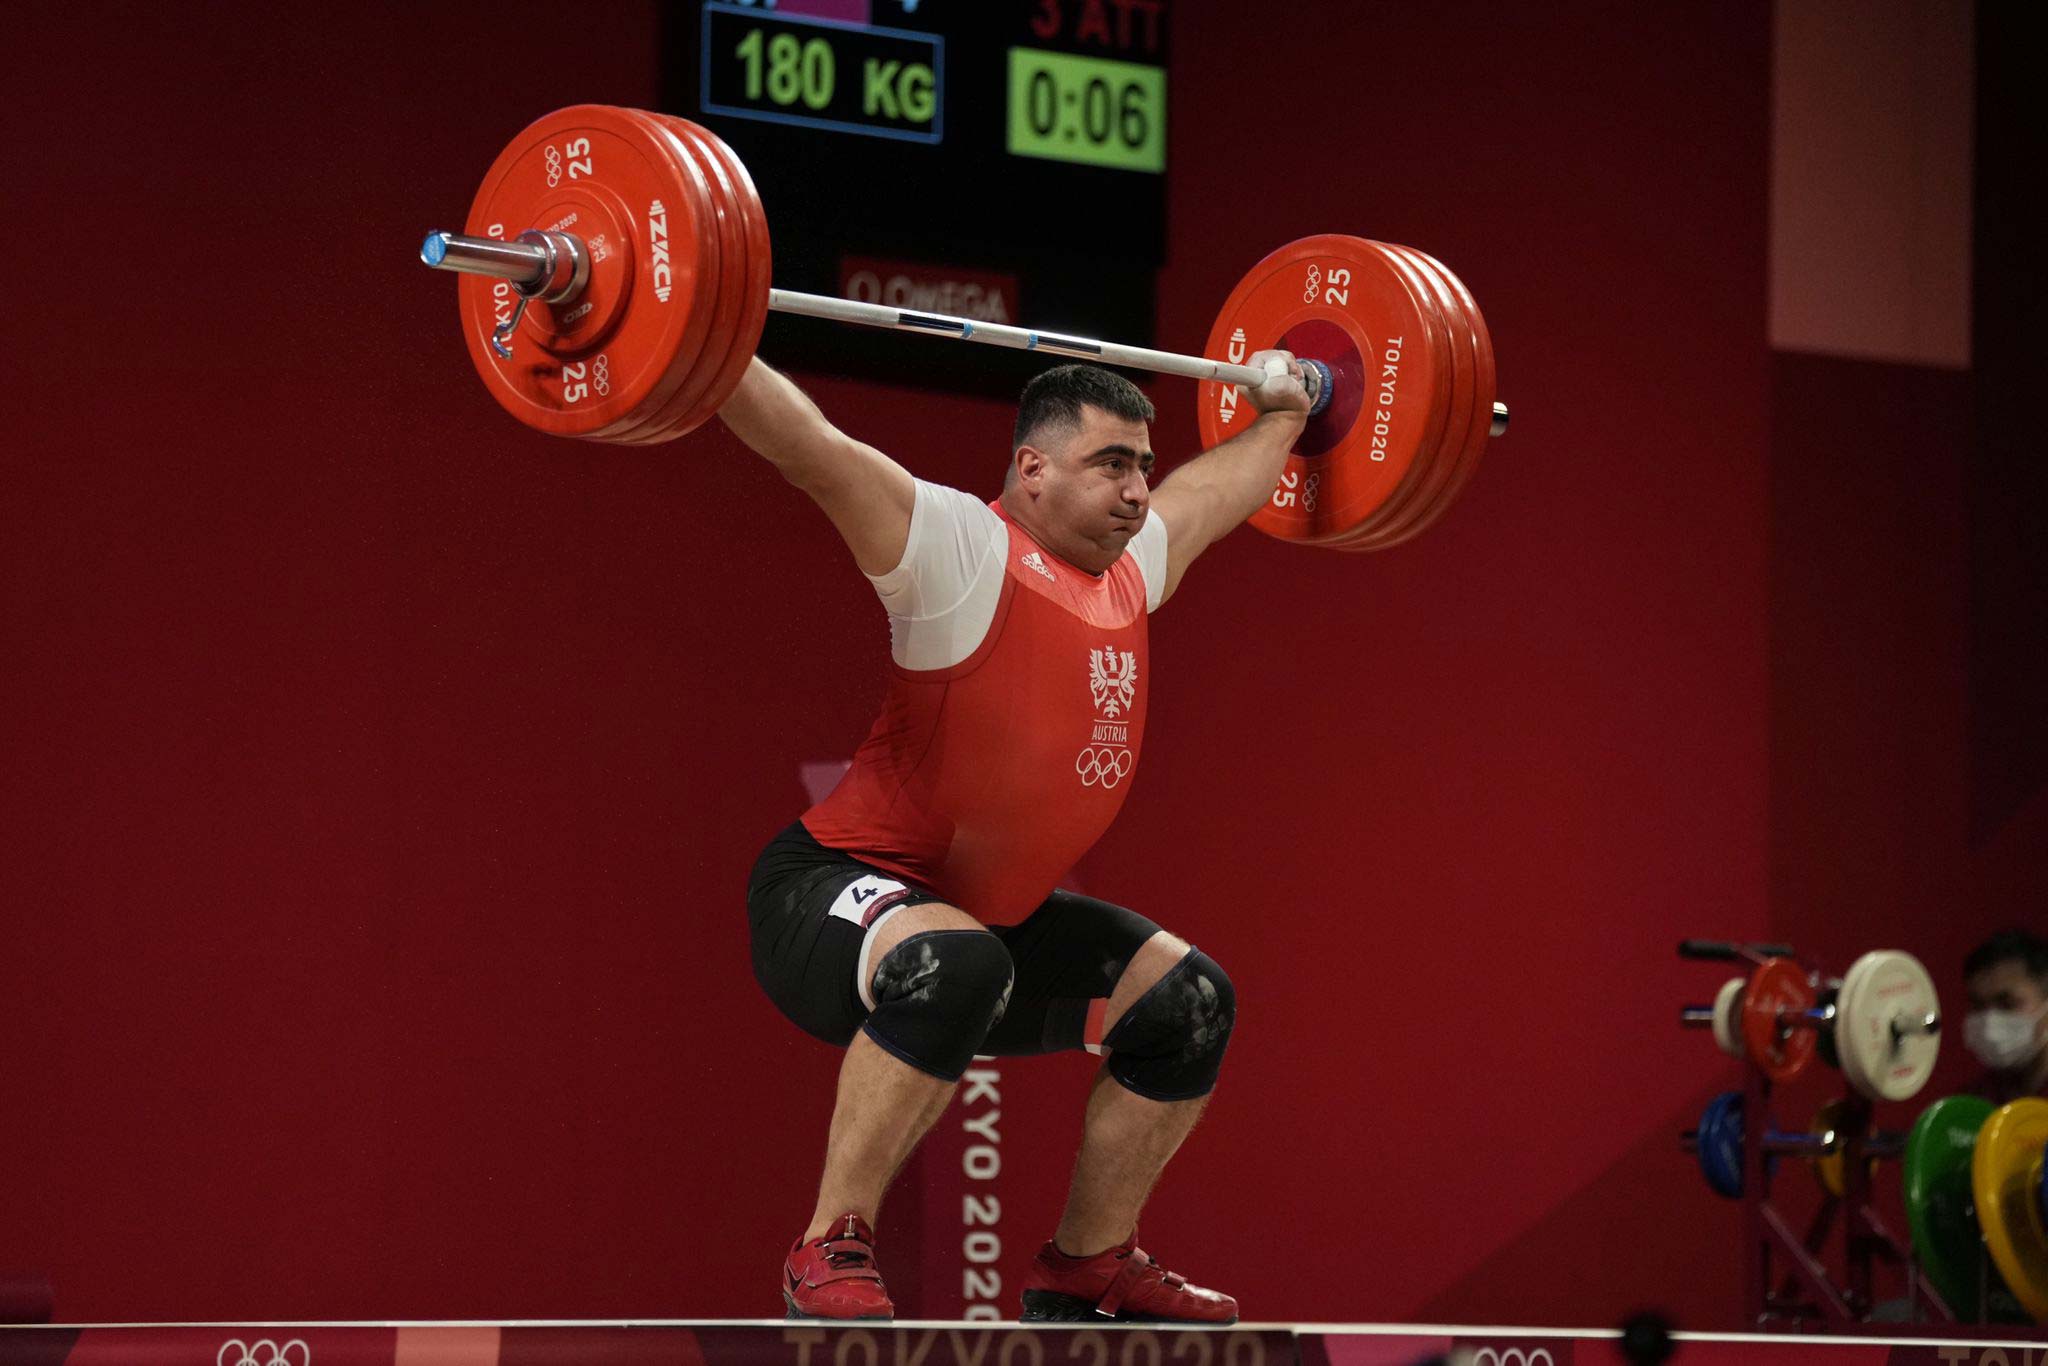 Rang-10-für-Osterreicher-Sargis-Martirosyan-in-Tokio-bei-Olympia-im-Gewichtheben